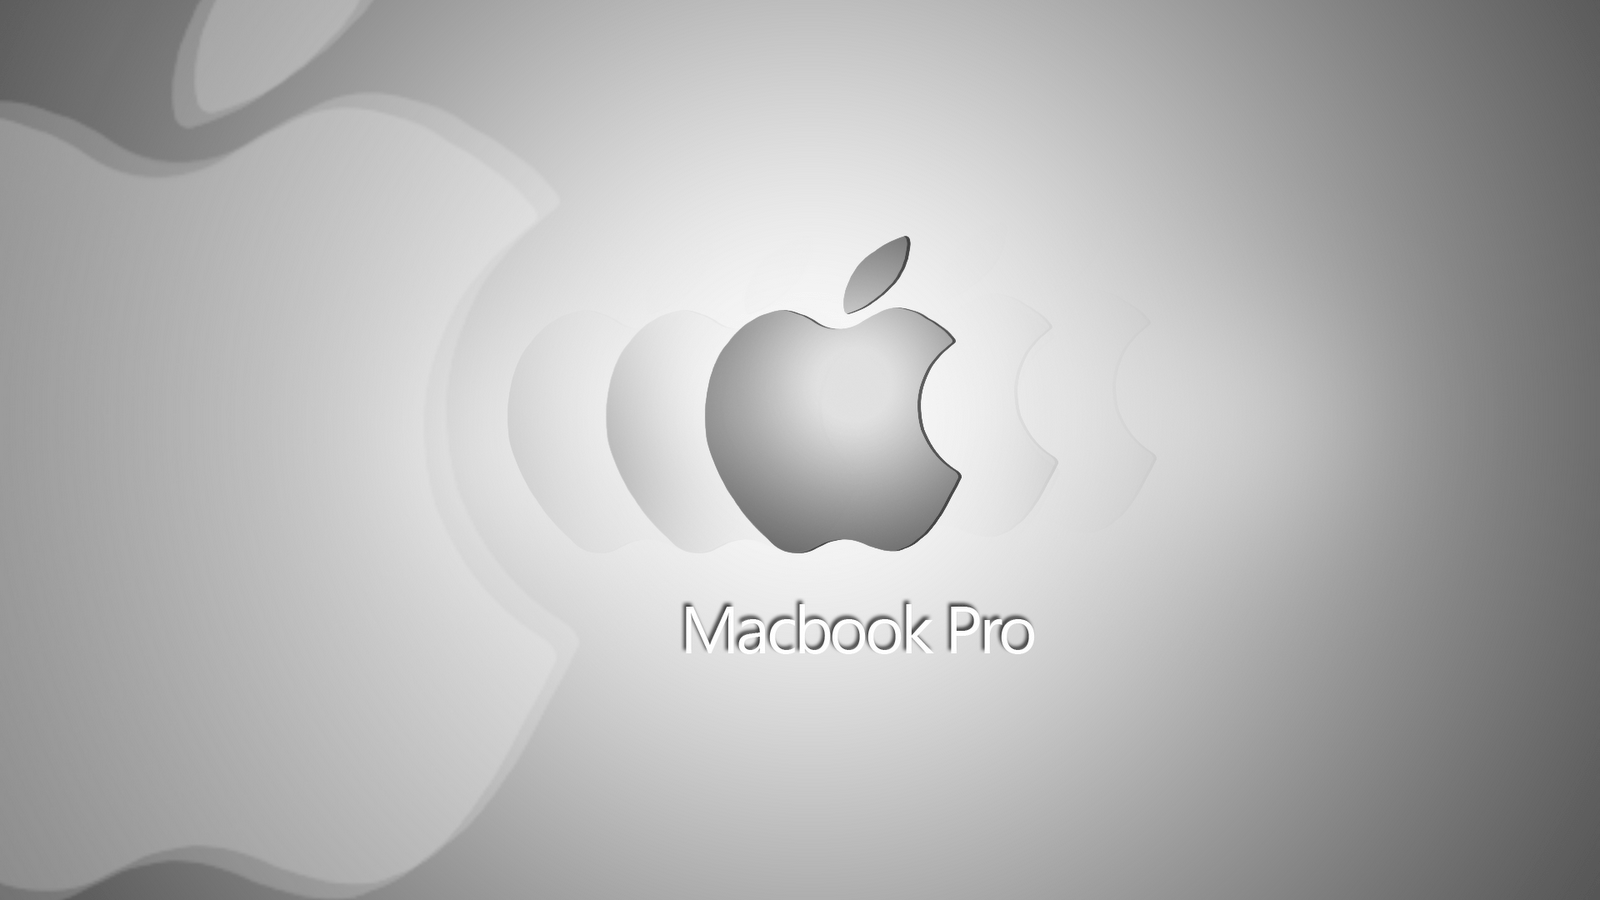 MacBook Pro Apple Logo Wallpapers - Top Free MacBook Pro Apple Logo